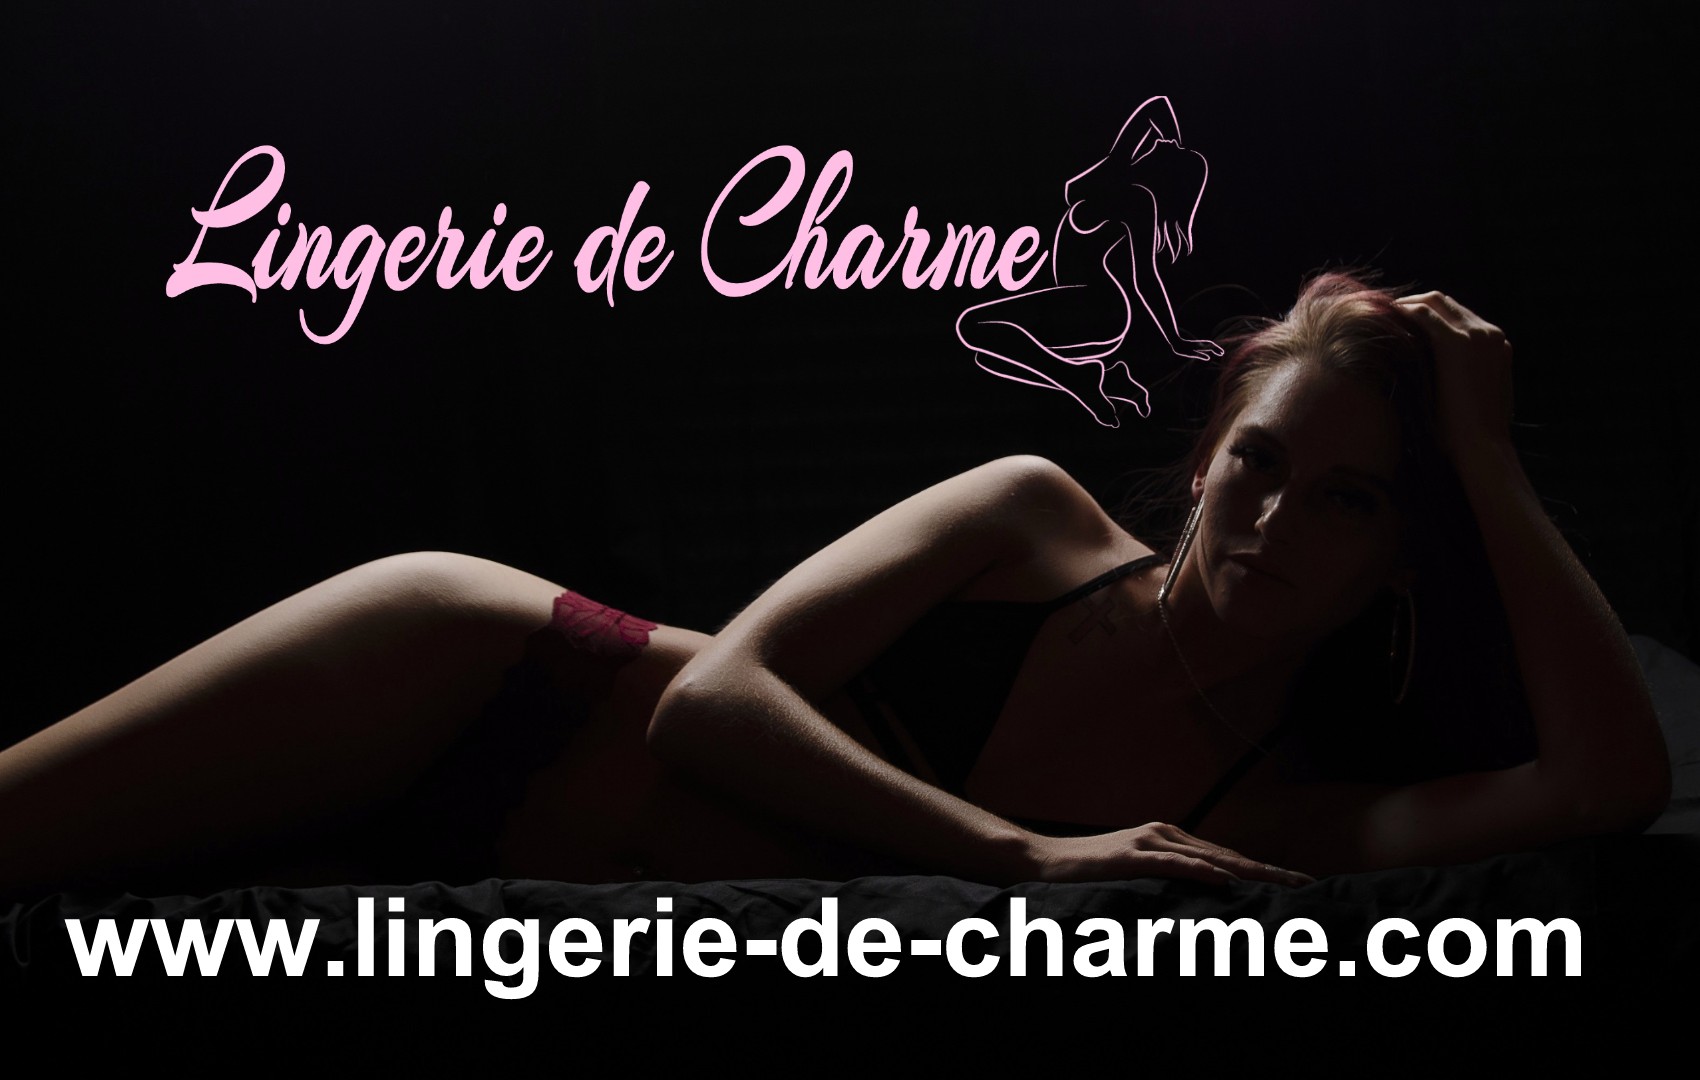 LINGERIE DE CHARME ANNEZAY 17 - LINGERIE SEXY ANNEZAY 17